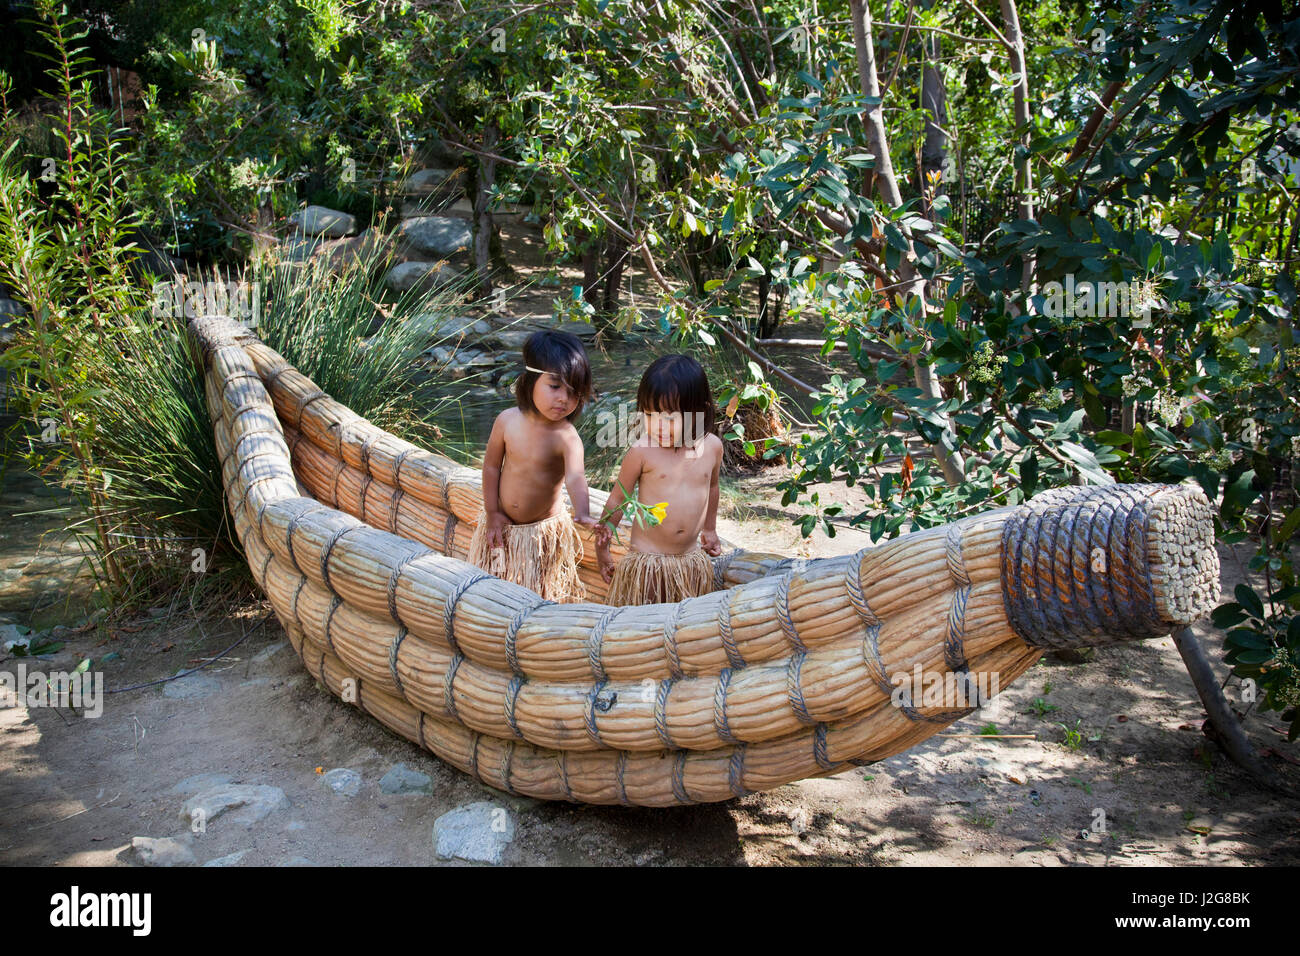 Deux California Native enfants habillés en herbe traditionnelles jupes jouer à l'intérieur d'un bateau de Tule, canot fait de queues de chat, et partager une fleur indigène. Banque D'Images